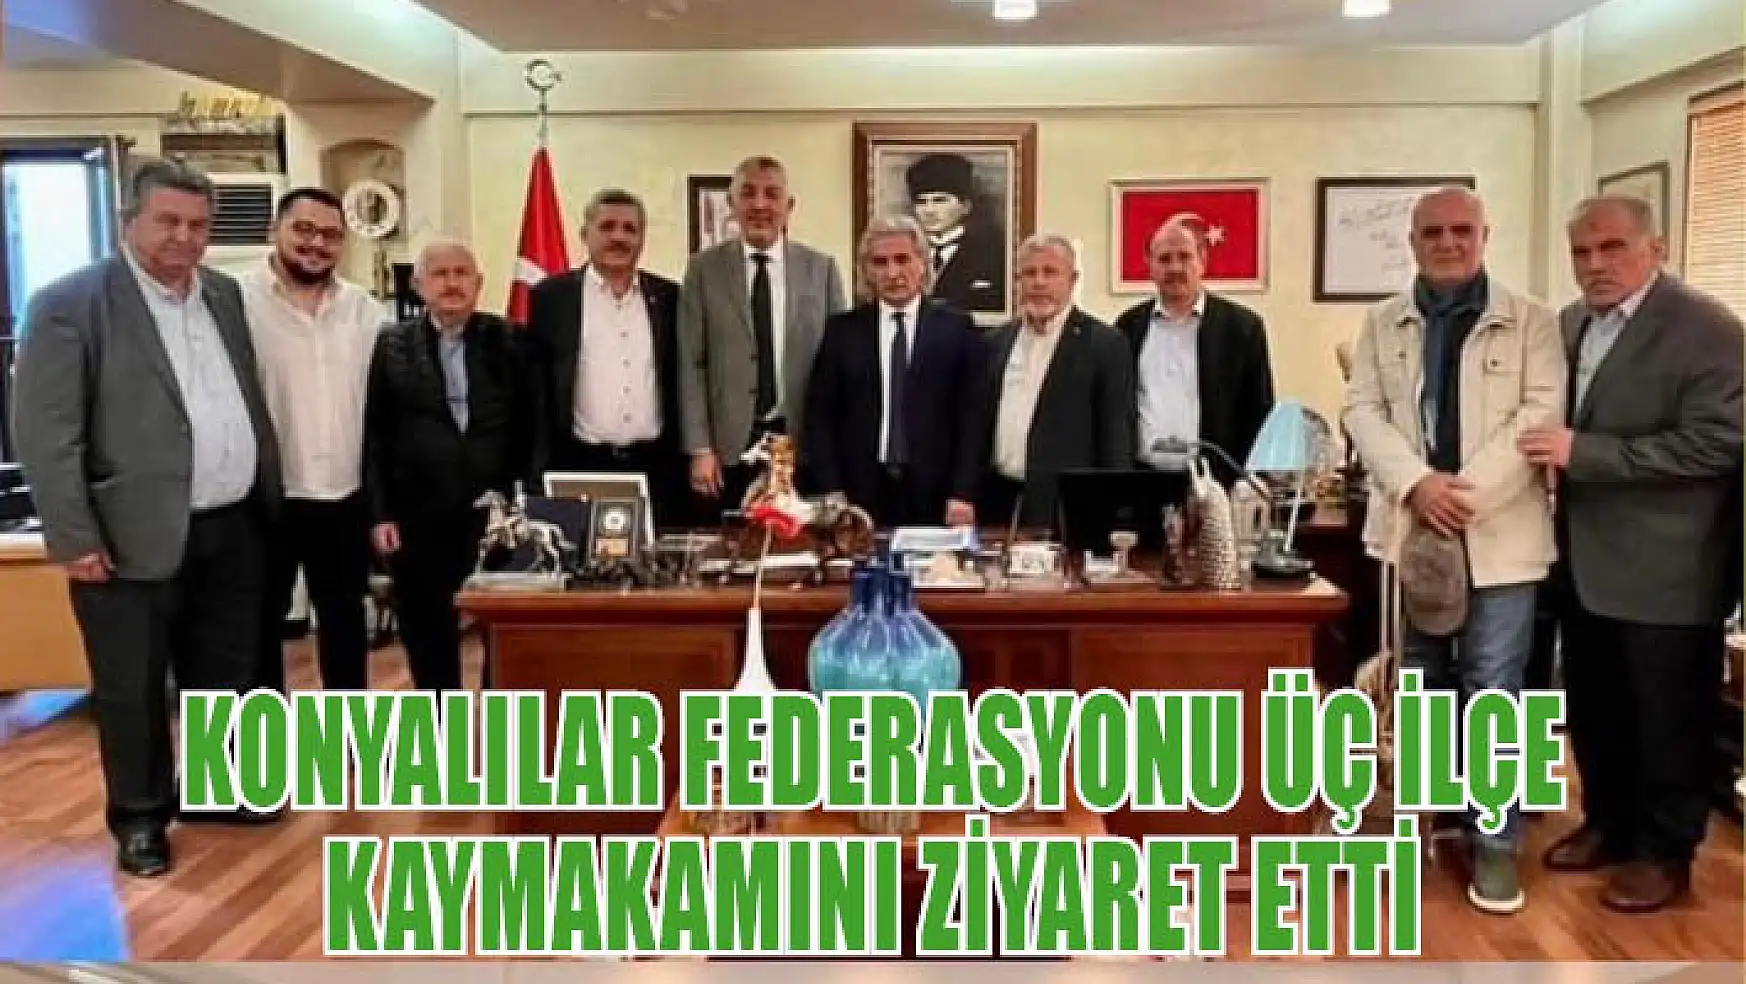 Konyalılar Federasyonu Üç İlçe Kaymakamını Ziyaret Etti